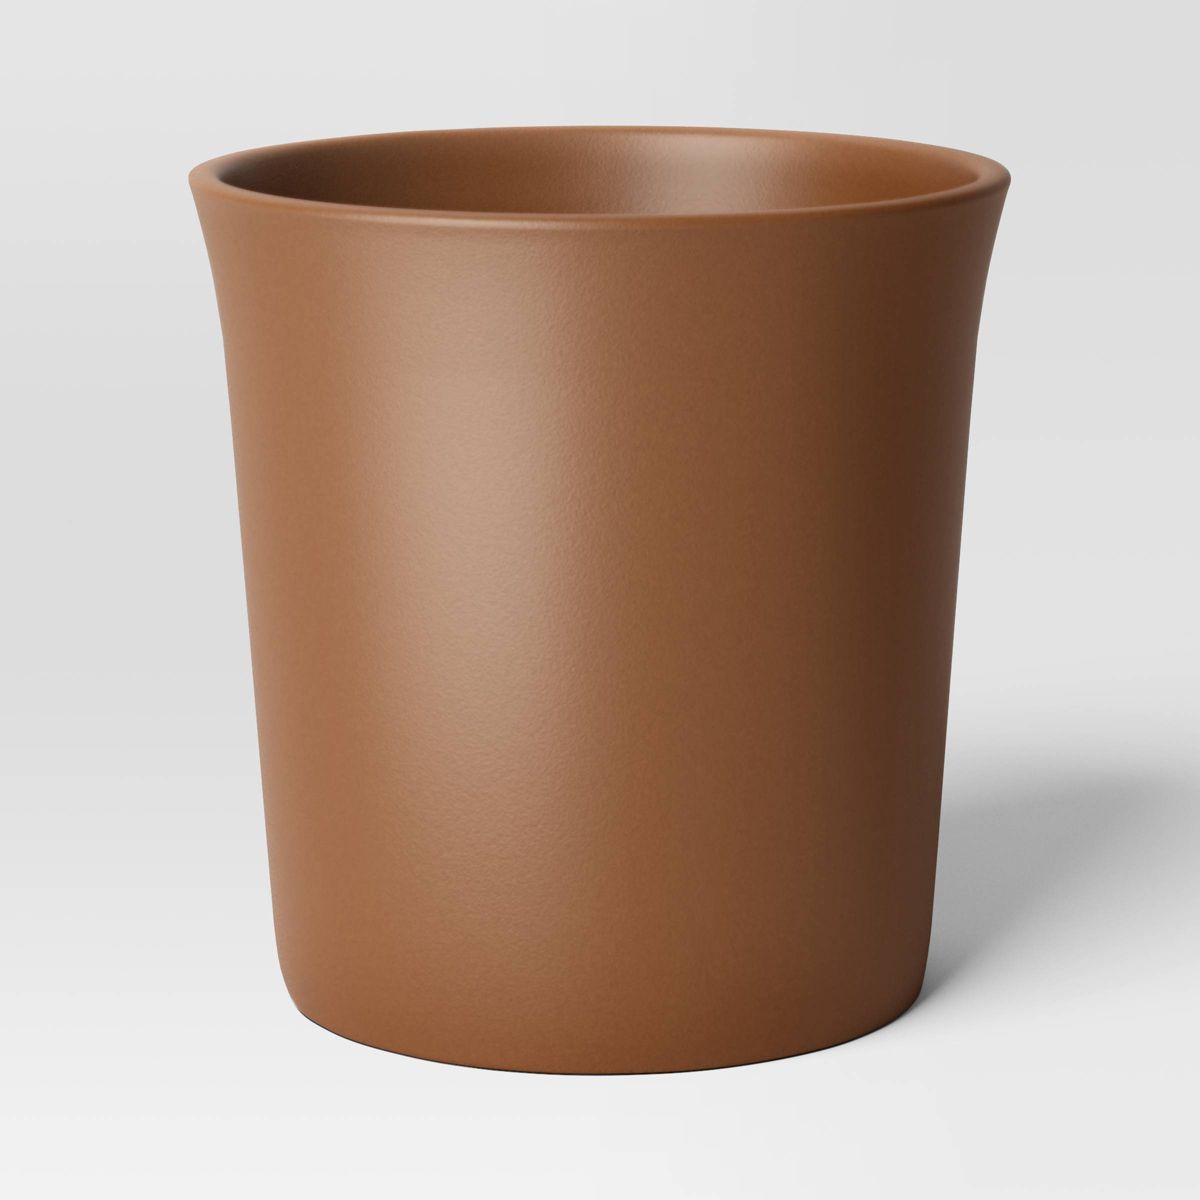 Aesthetic Plastic Indoor Outdoor Planter Pot - Threshold™ | Target